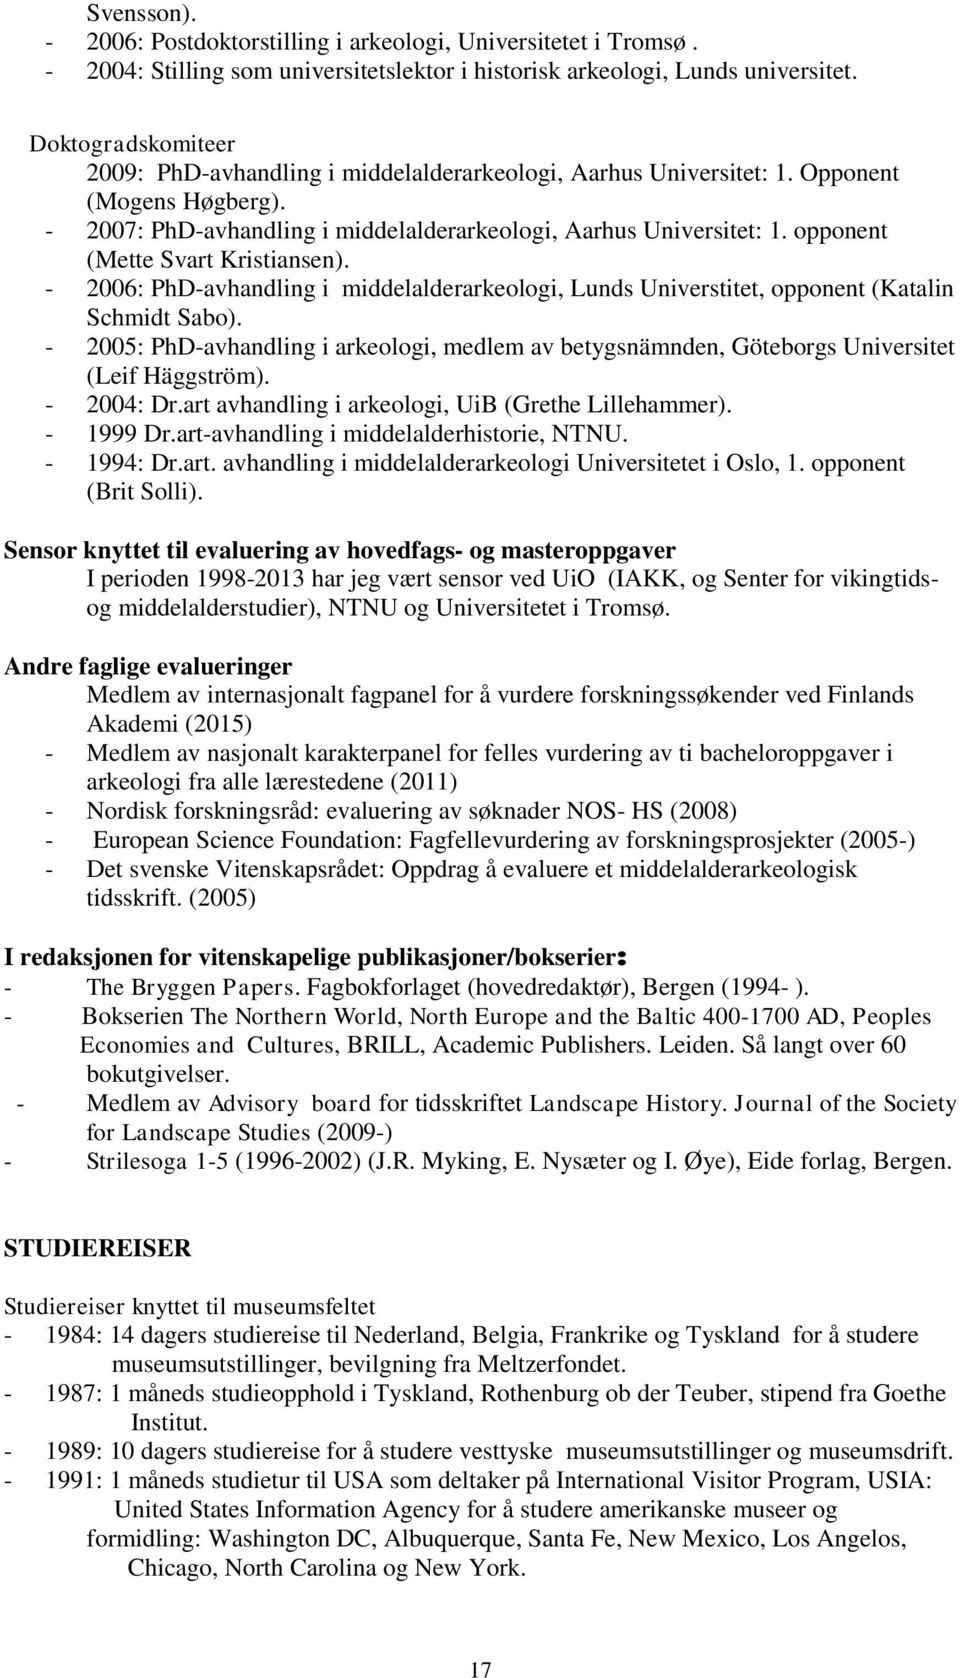 opponent (Mette Svart Kristiansen). - 2006: PhD-avhandling i middelalderarkeologi, Lunds Universtitet, opponent (Katalin Schmidt Sabo).